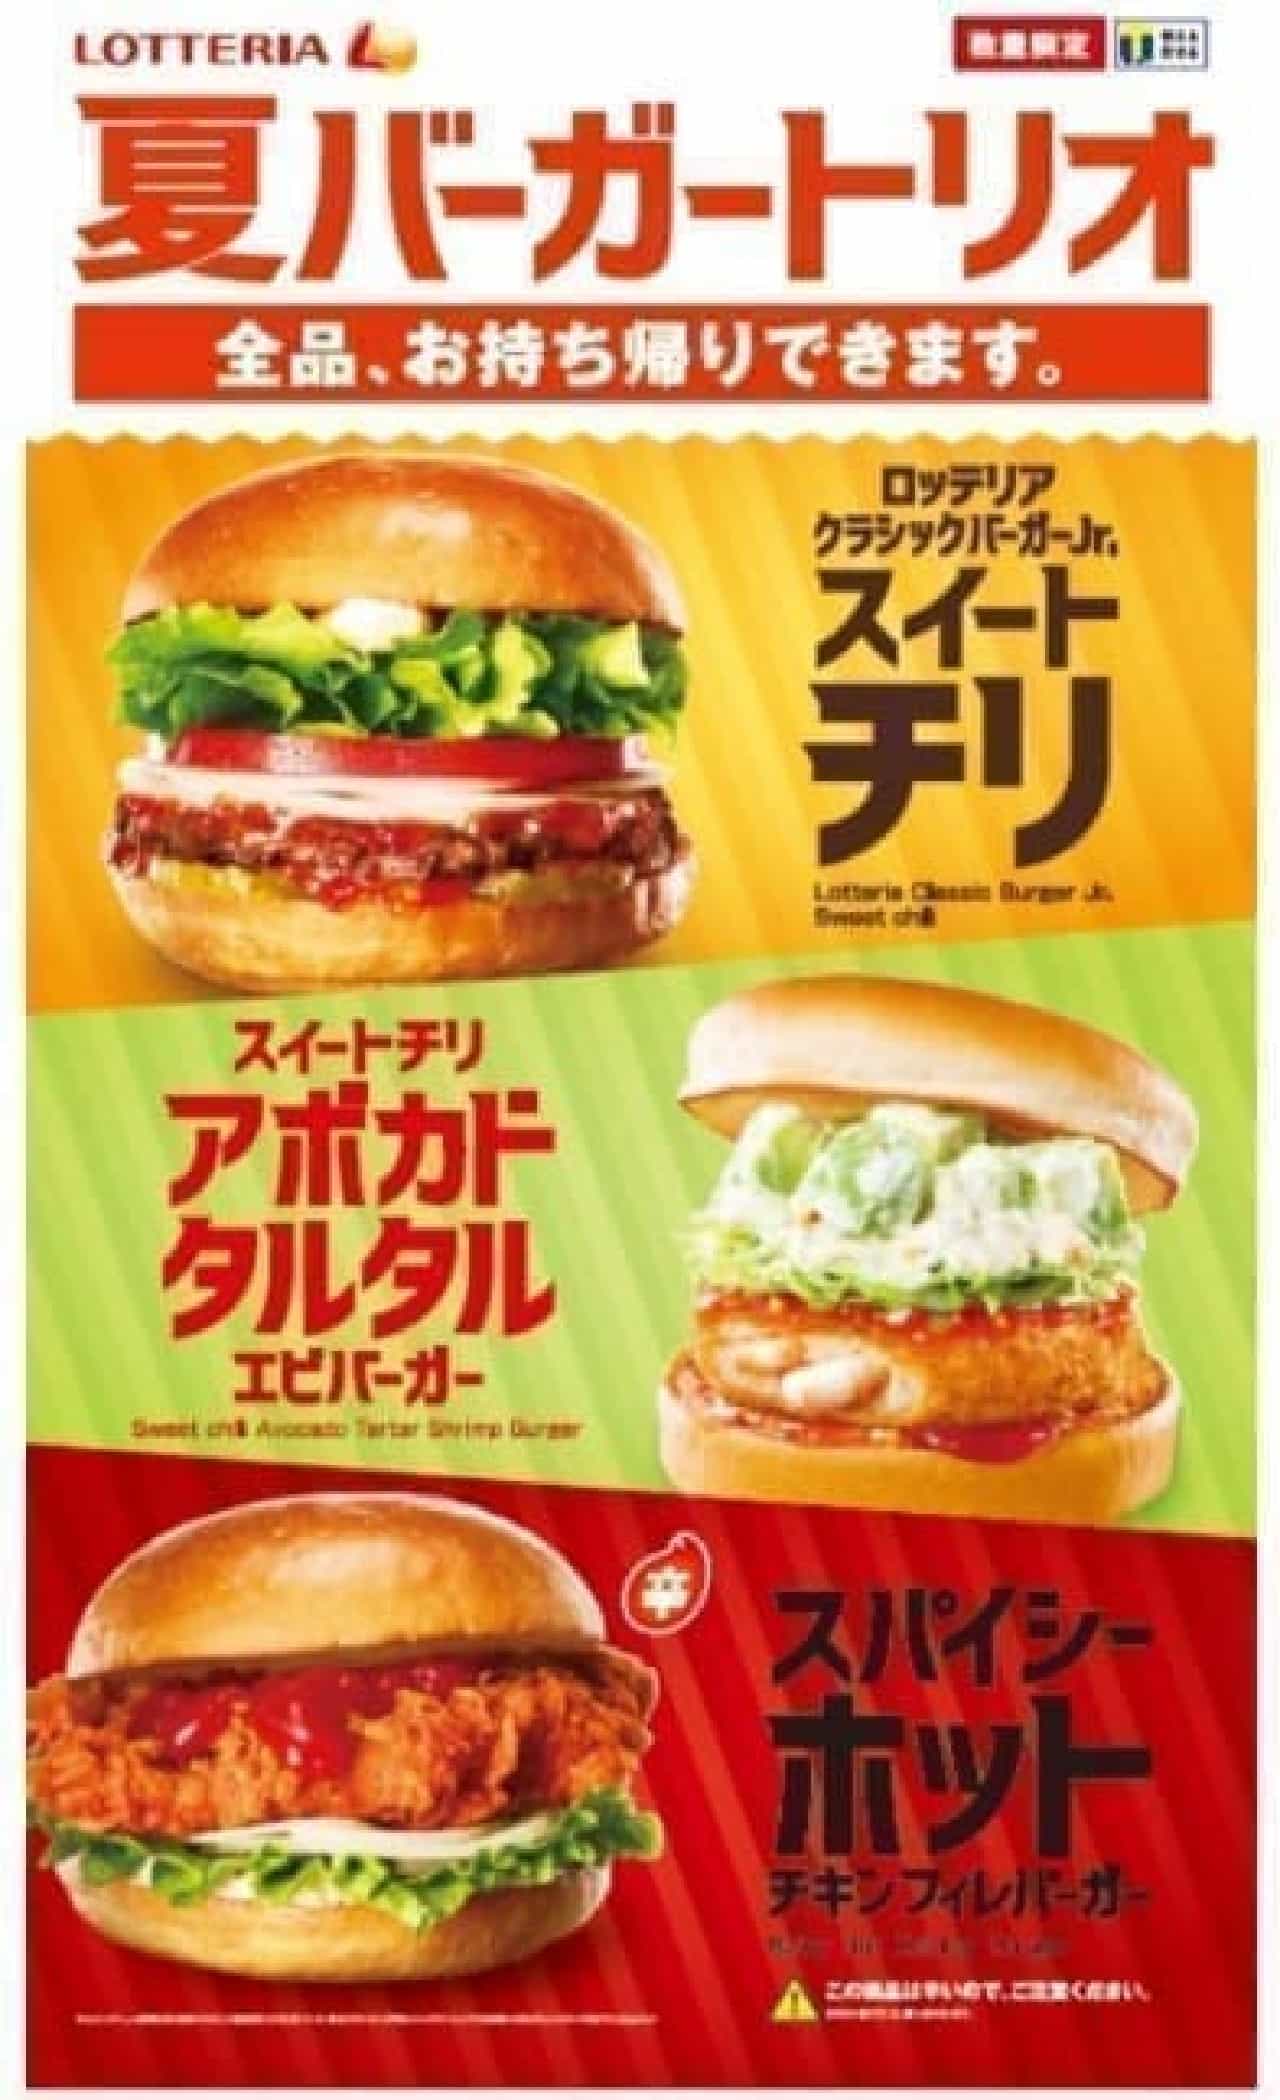 Lotteria summer burger trio